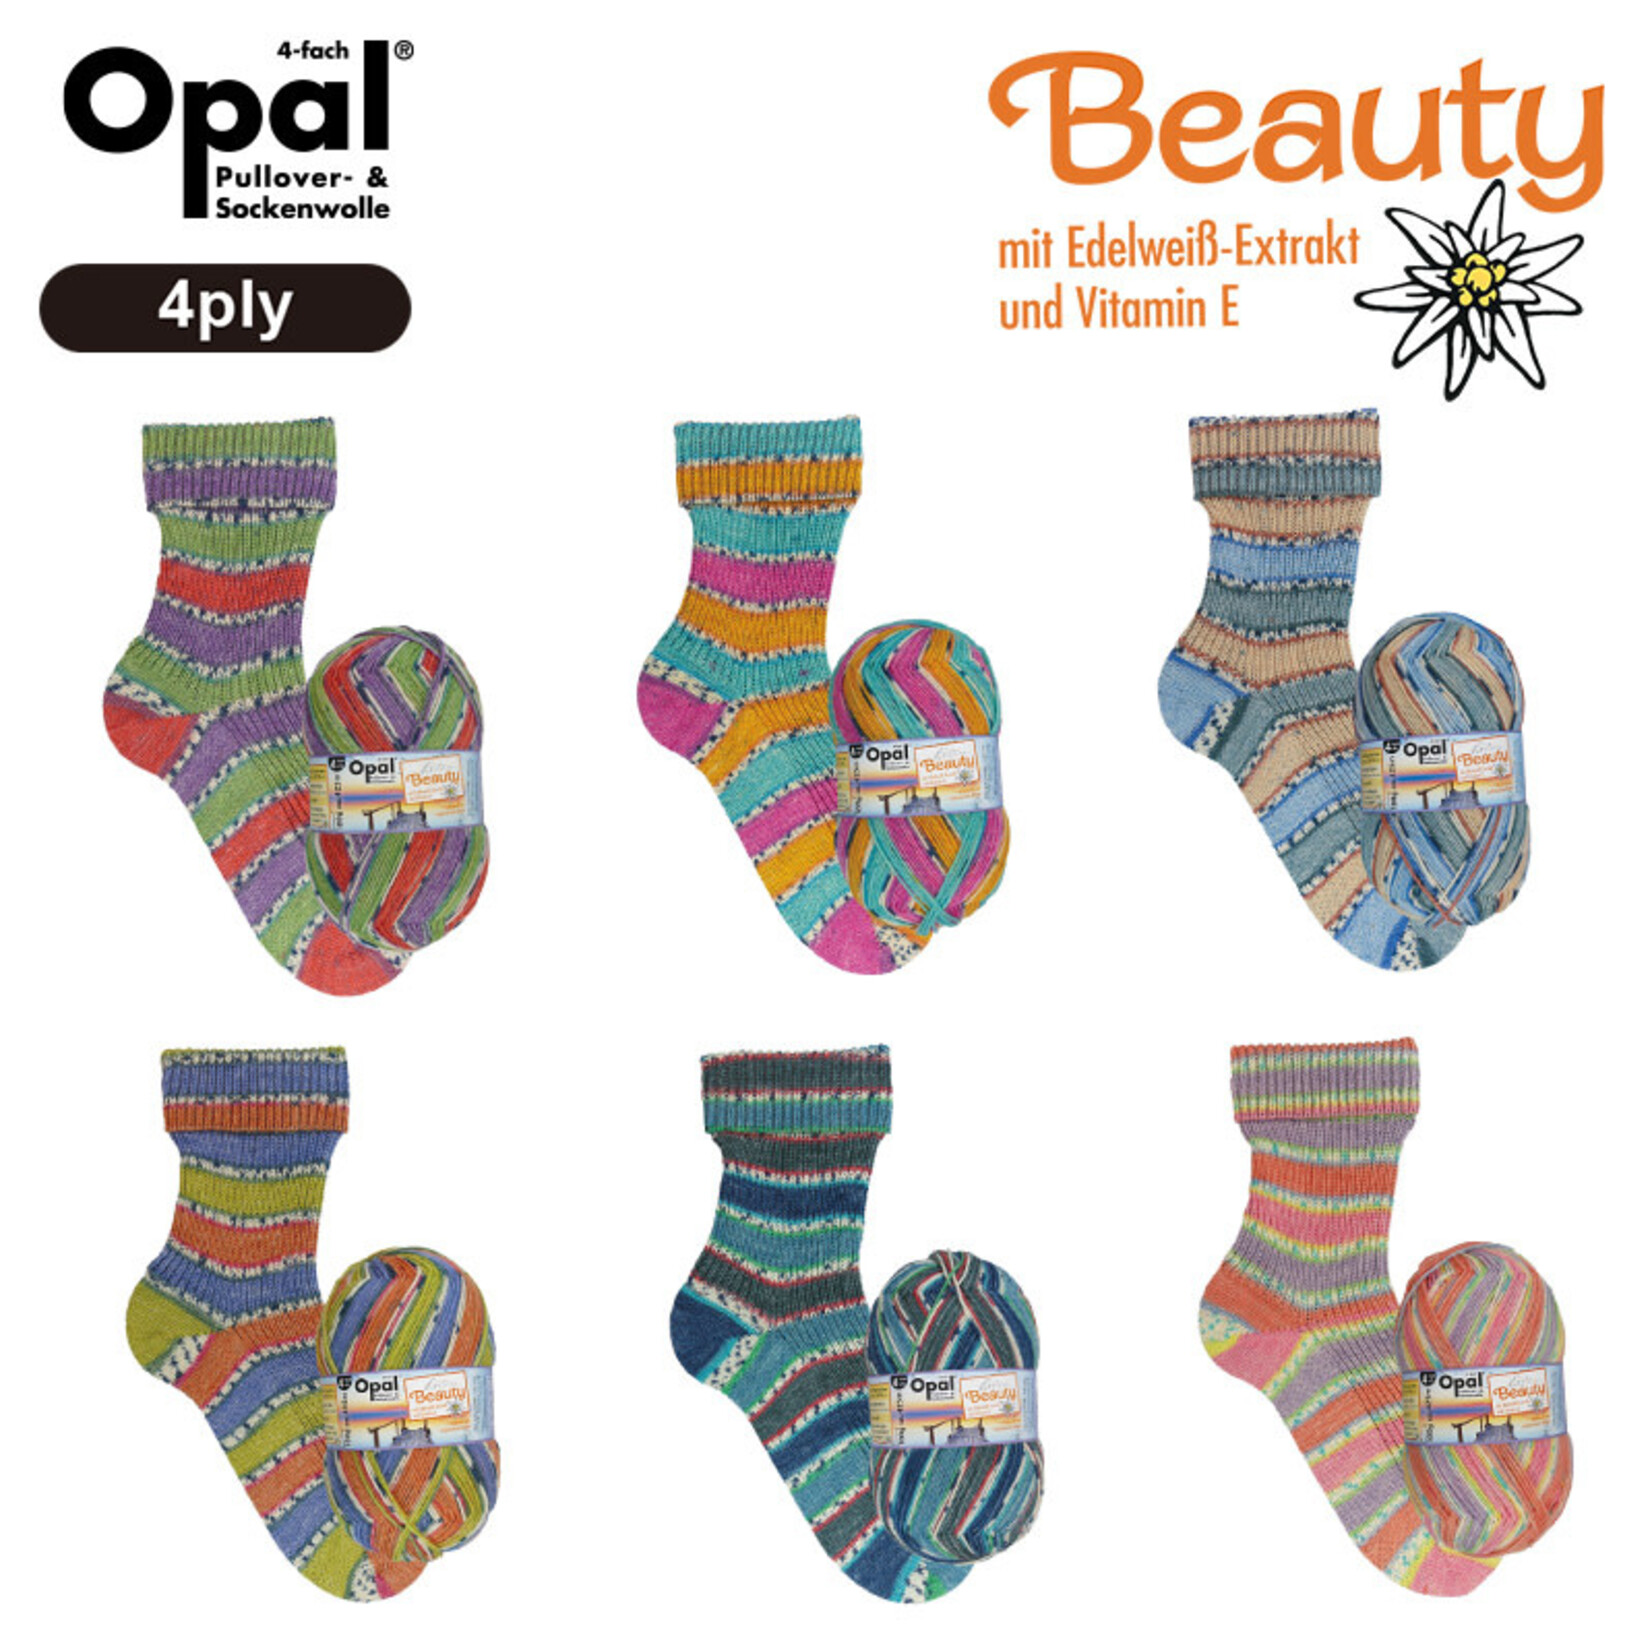 Opal Beauty 3 Wellness (4 ply) by Opal